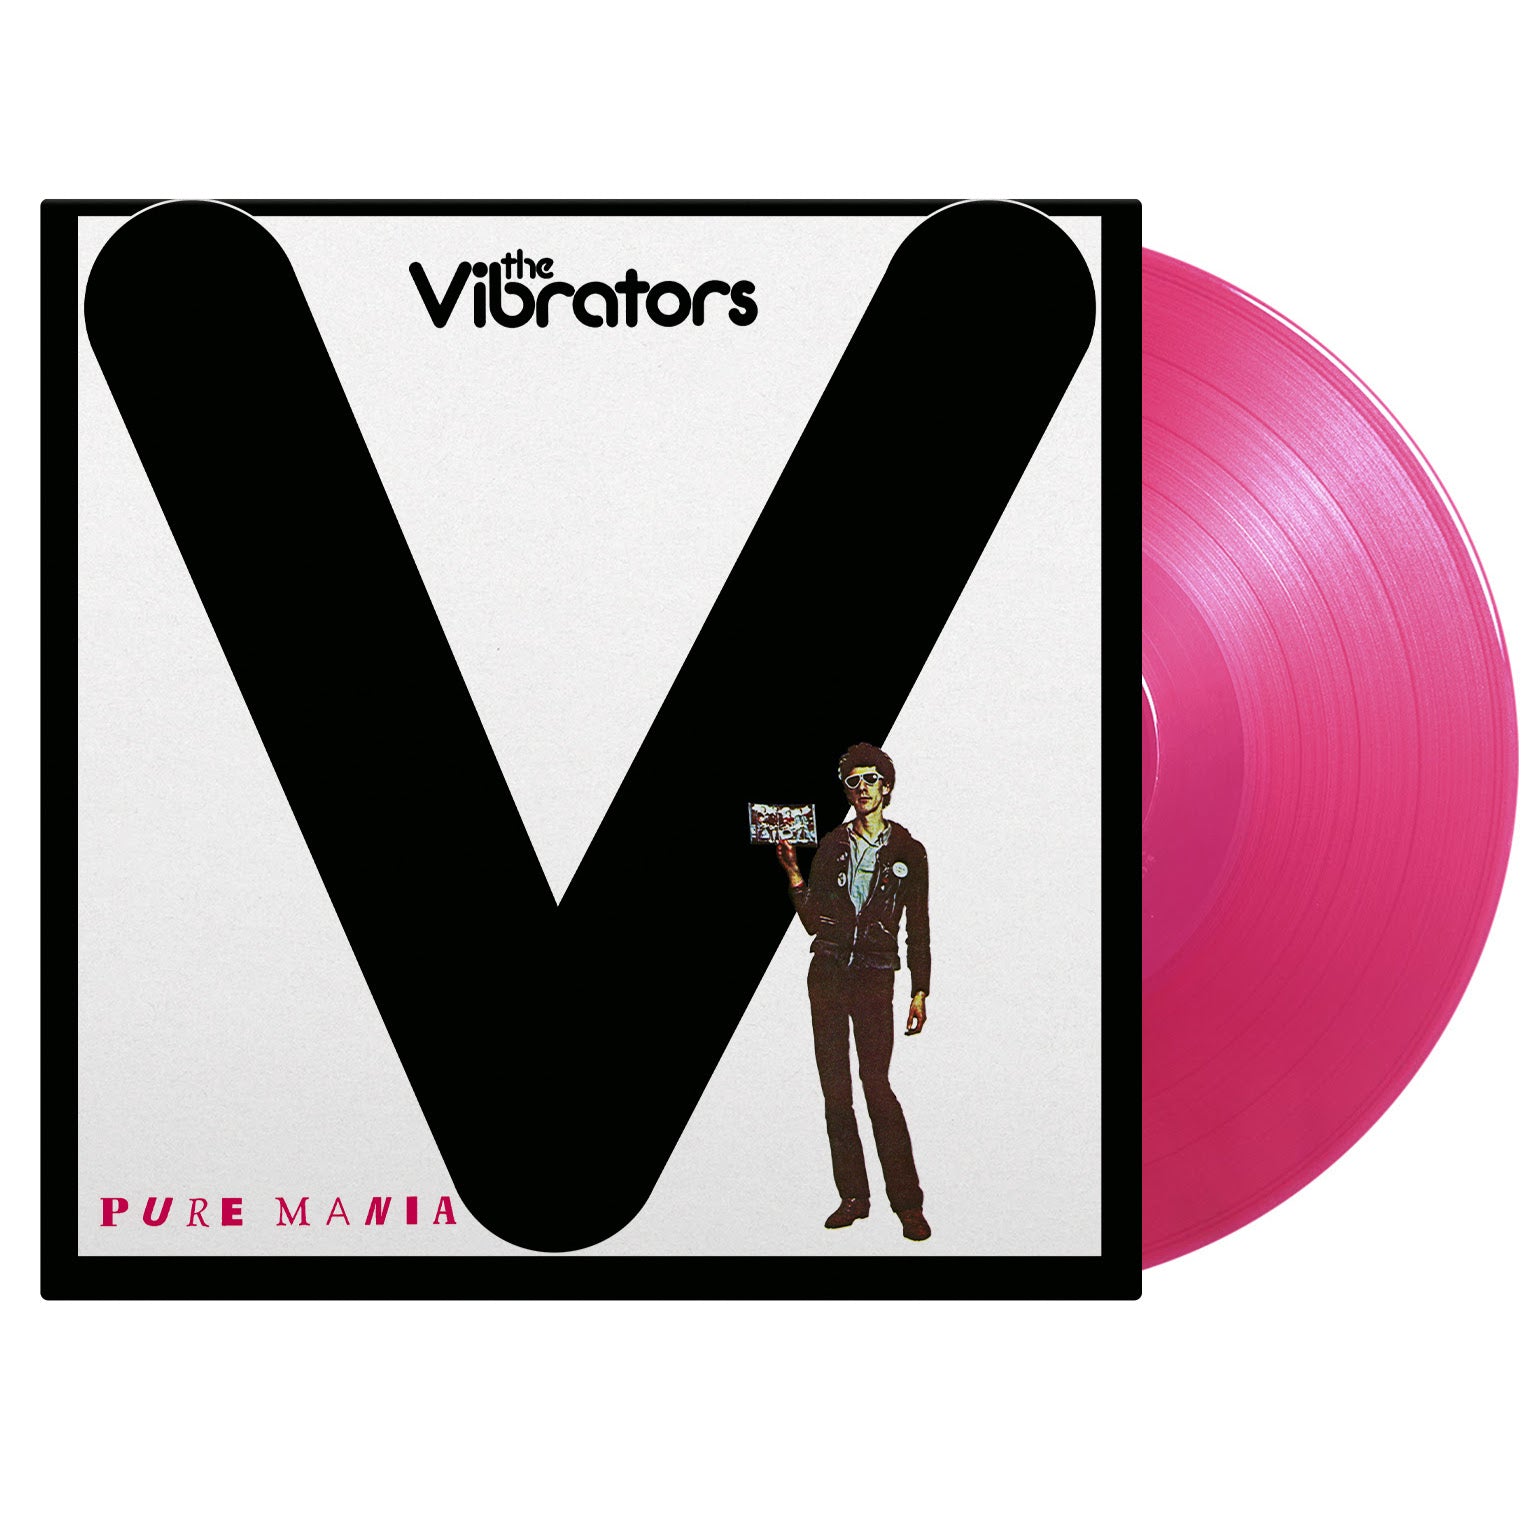 THE VIBRATORS - Pure Mania - LP - Translucent Magenta Vinyl [JUN 21]